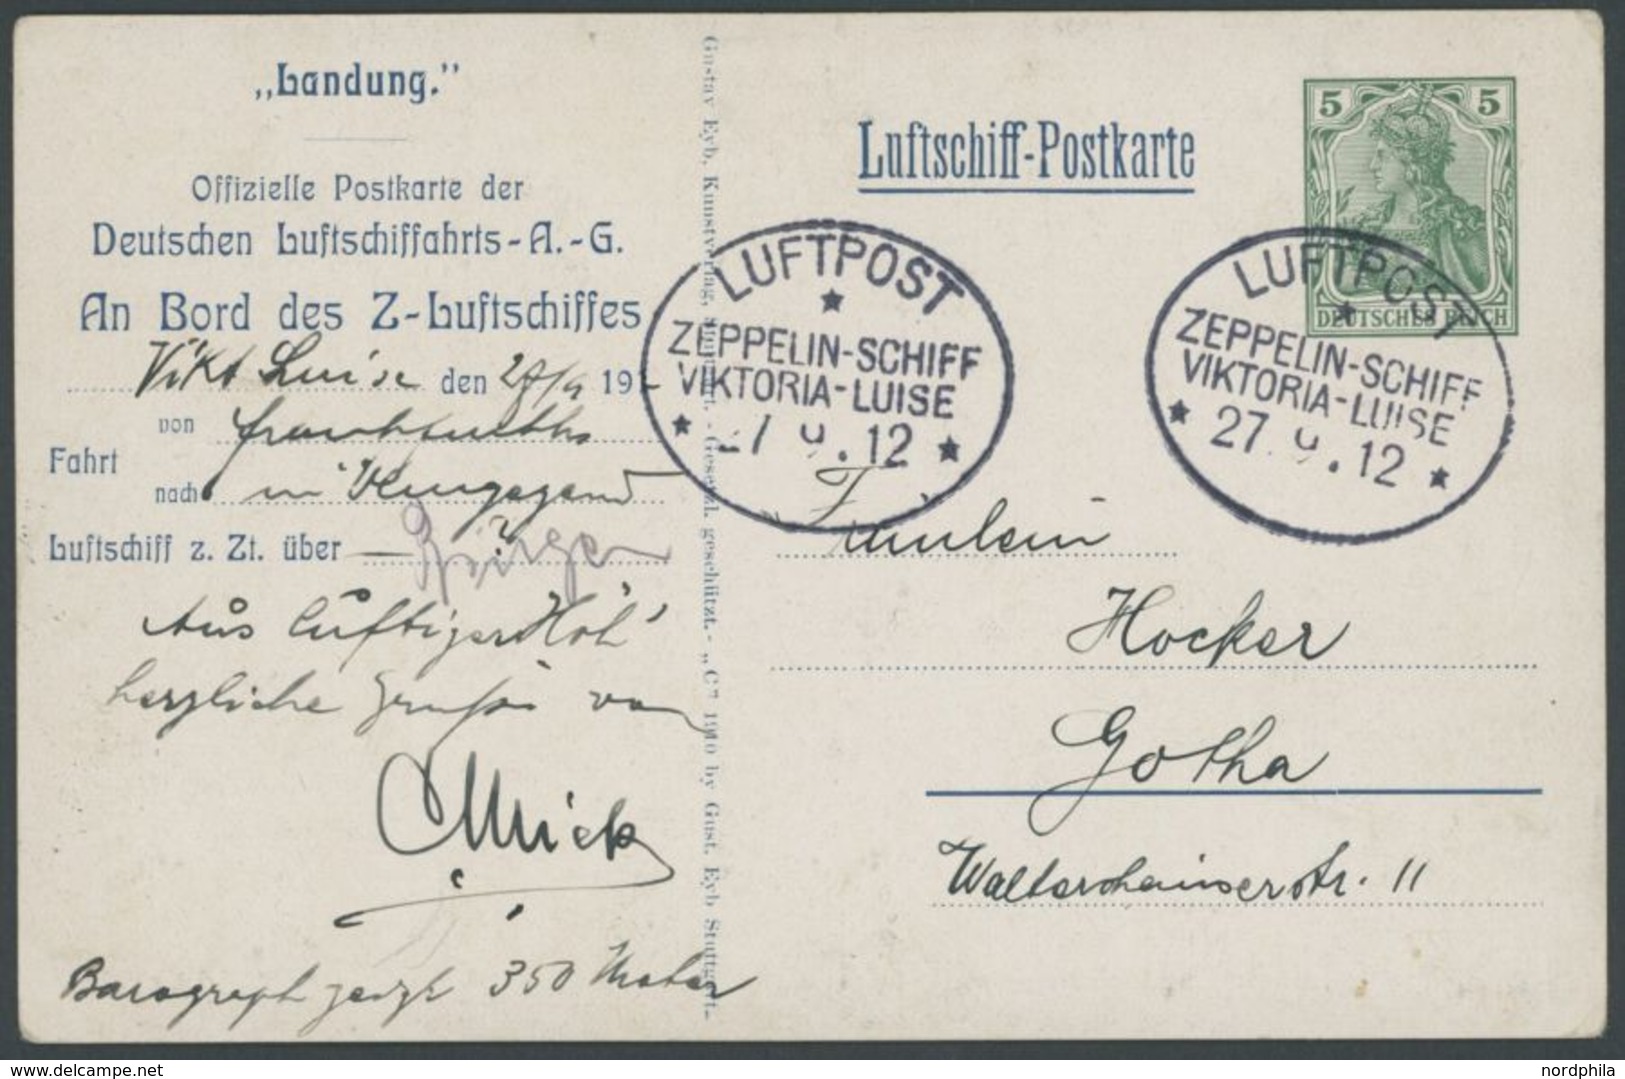 27.9.1912, Luftschiff Viktoria-Luise, Frankfurt-Rundfahrt Dokumentation Mit Original Luftschiff Postkarte Eines Passagie - Poste Aérienne & Zeppelin